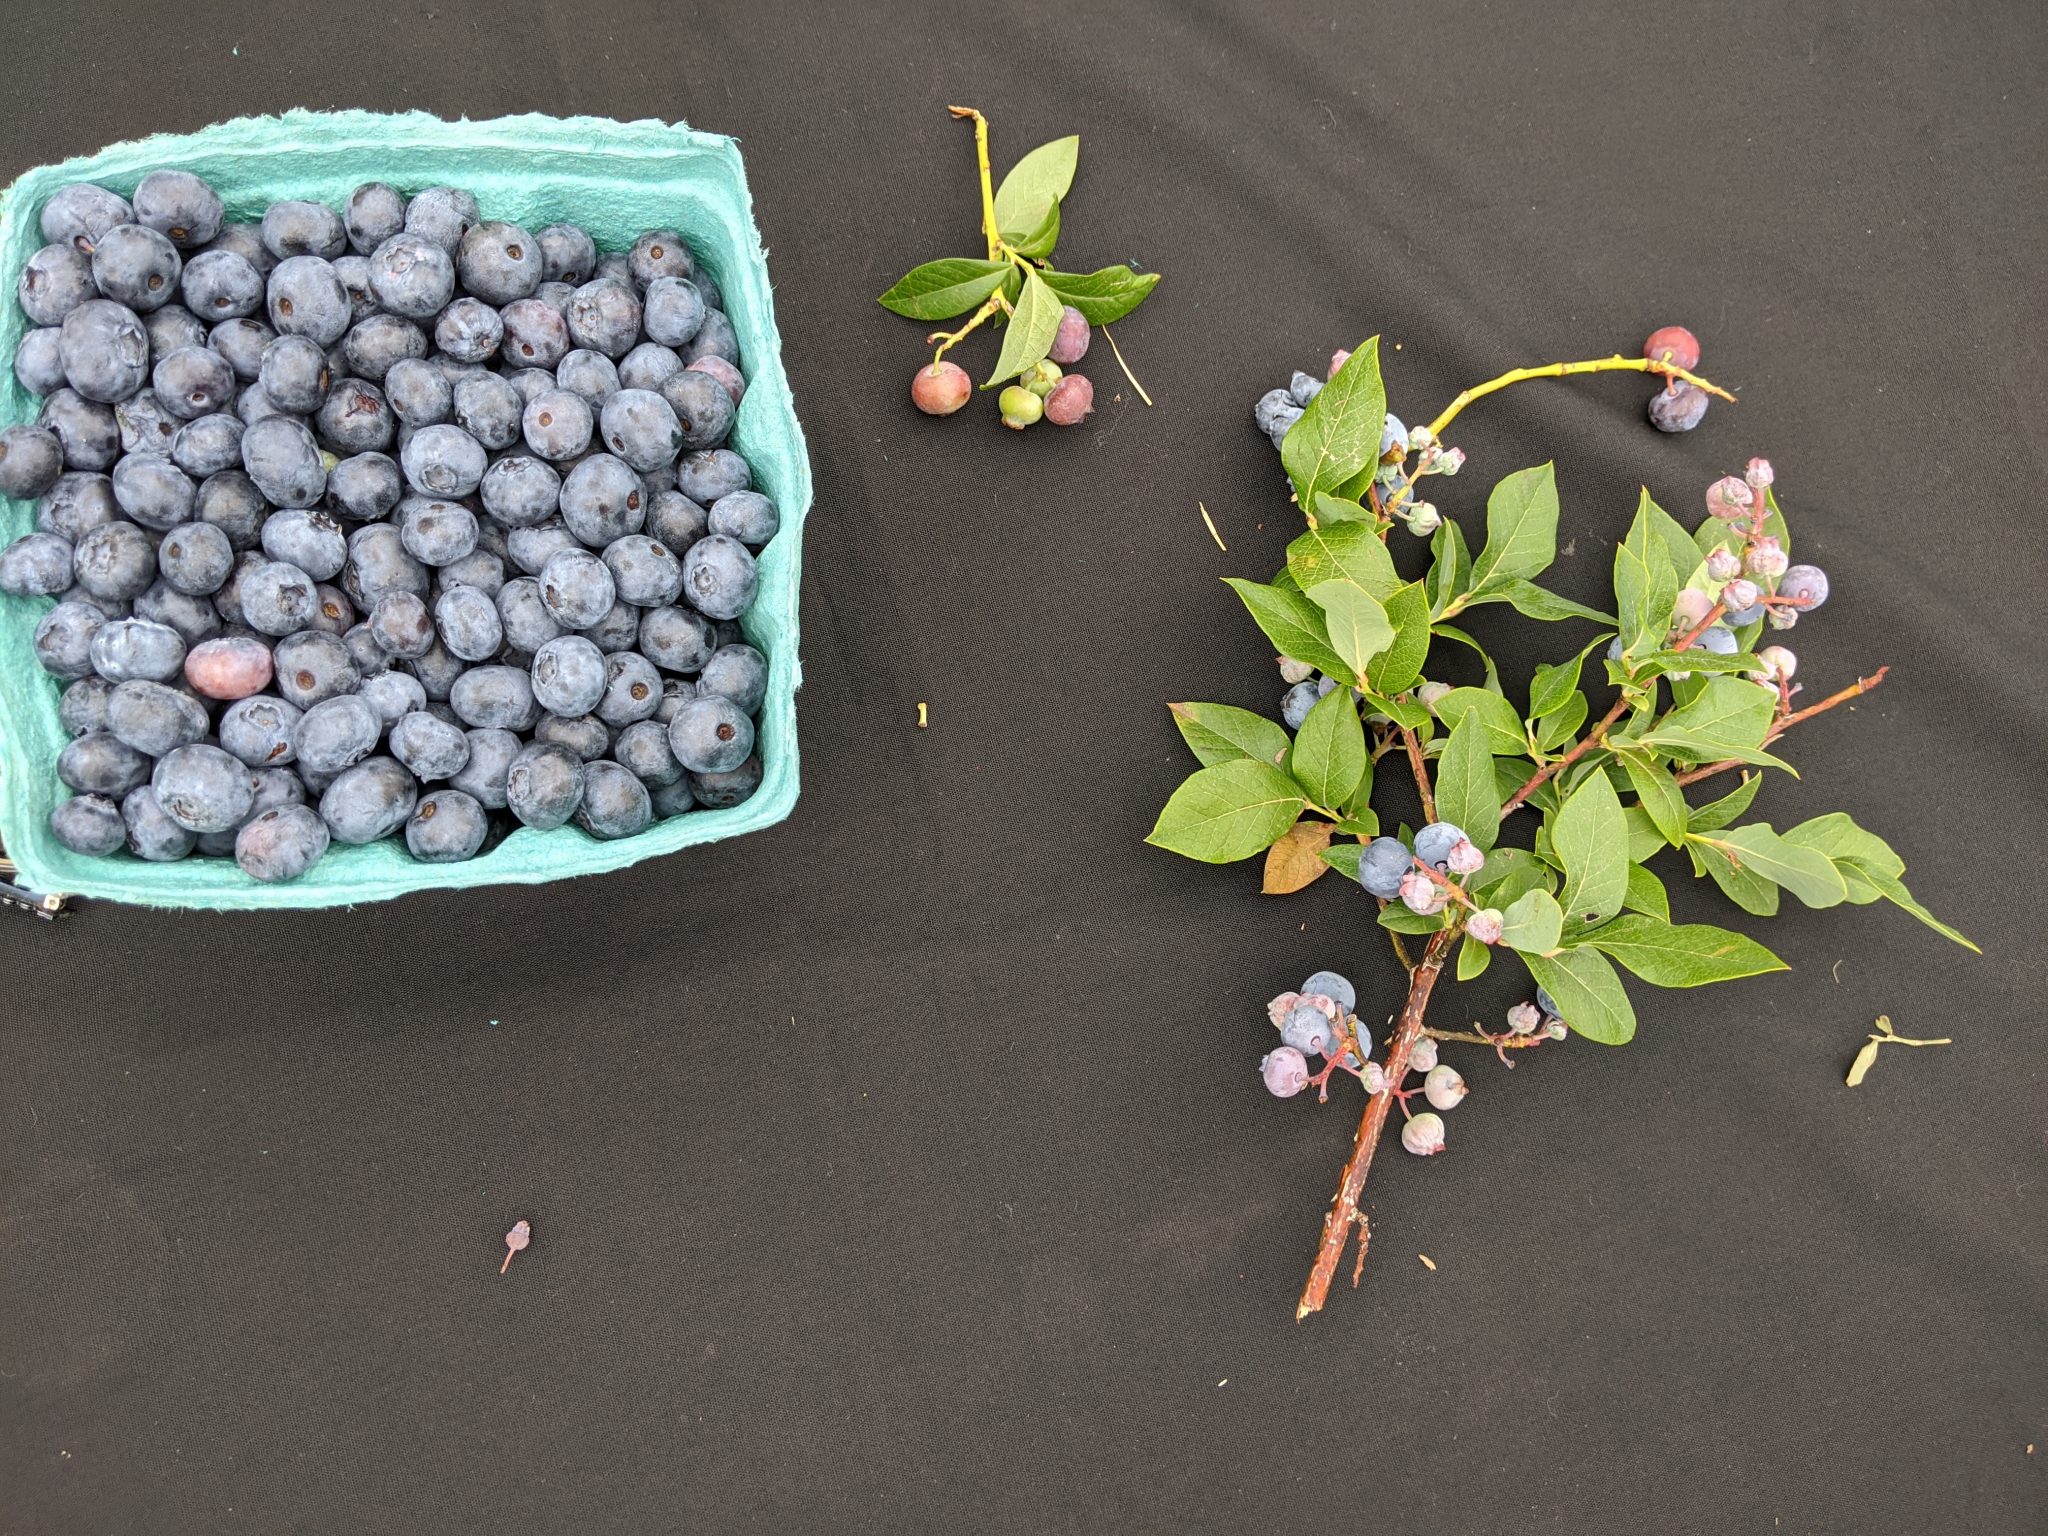 Blueberries from NJ summer festivals